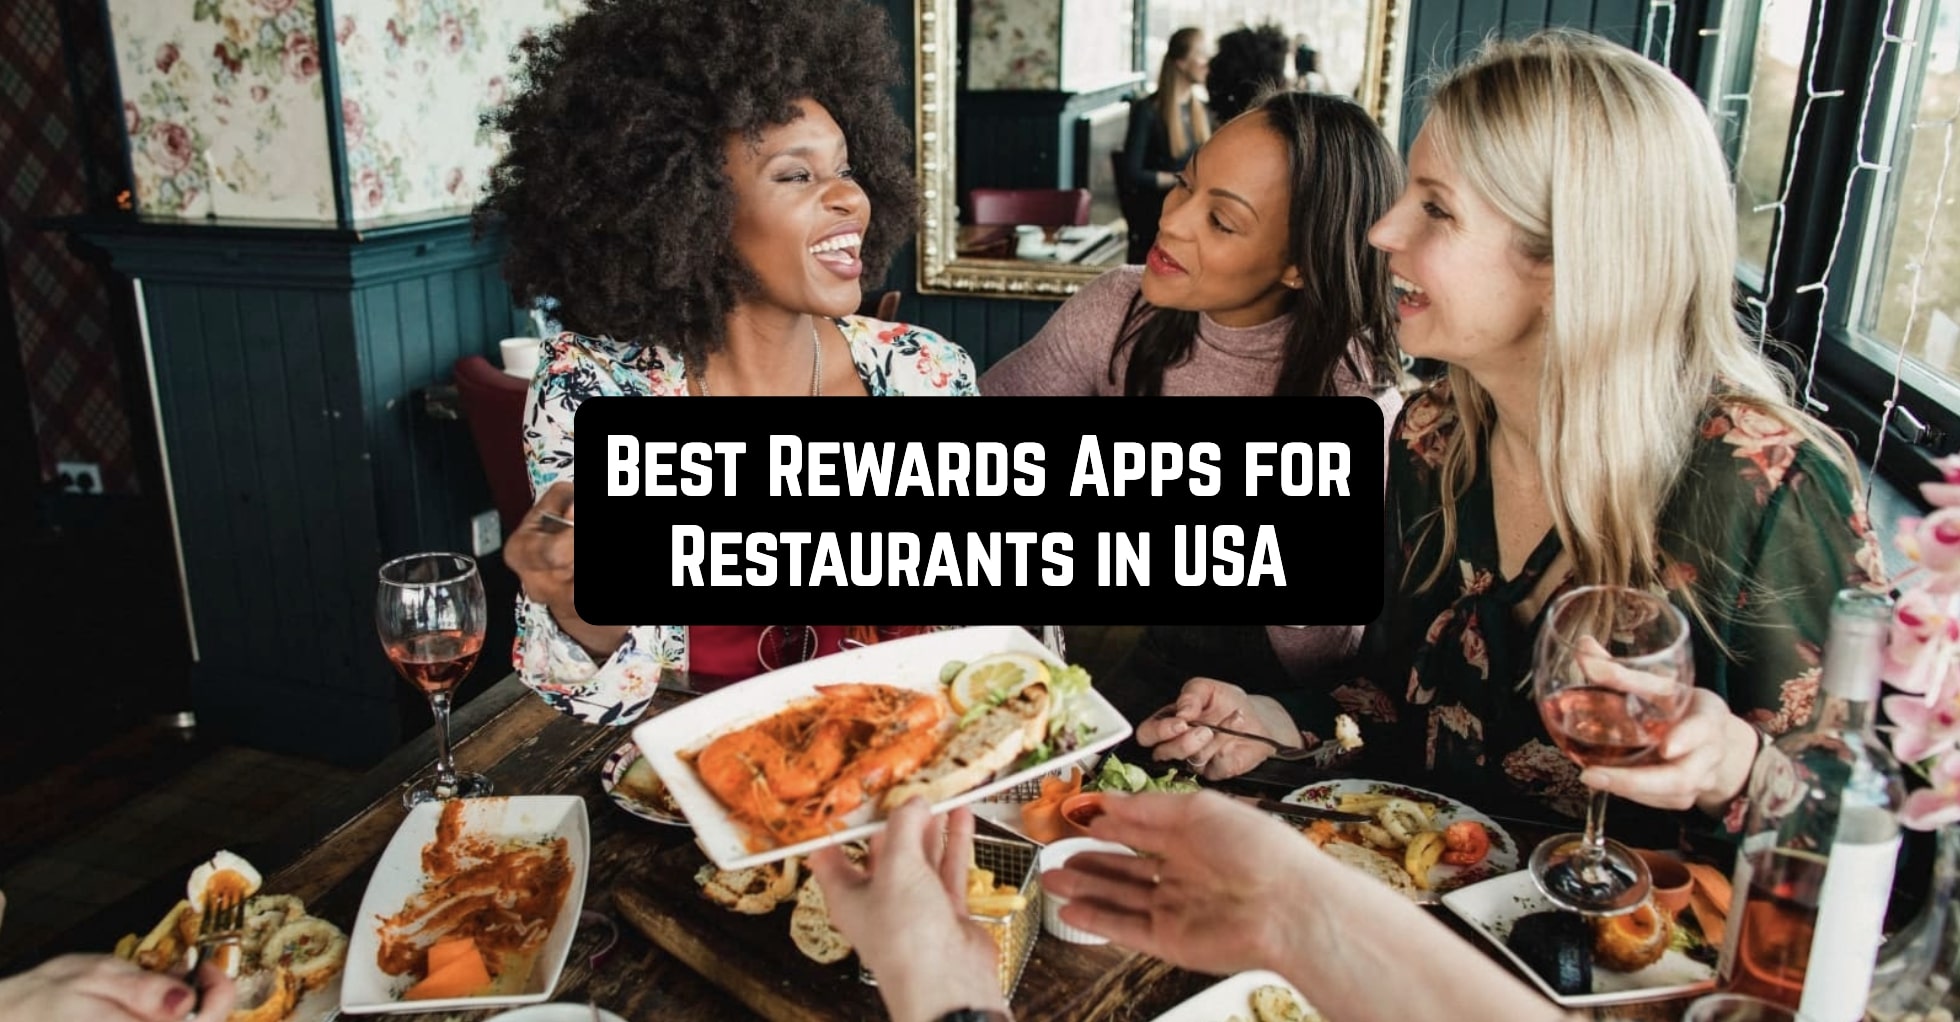 Best Rewards Apps for Restaurants in USA